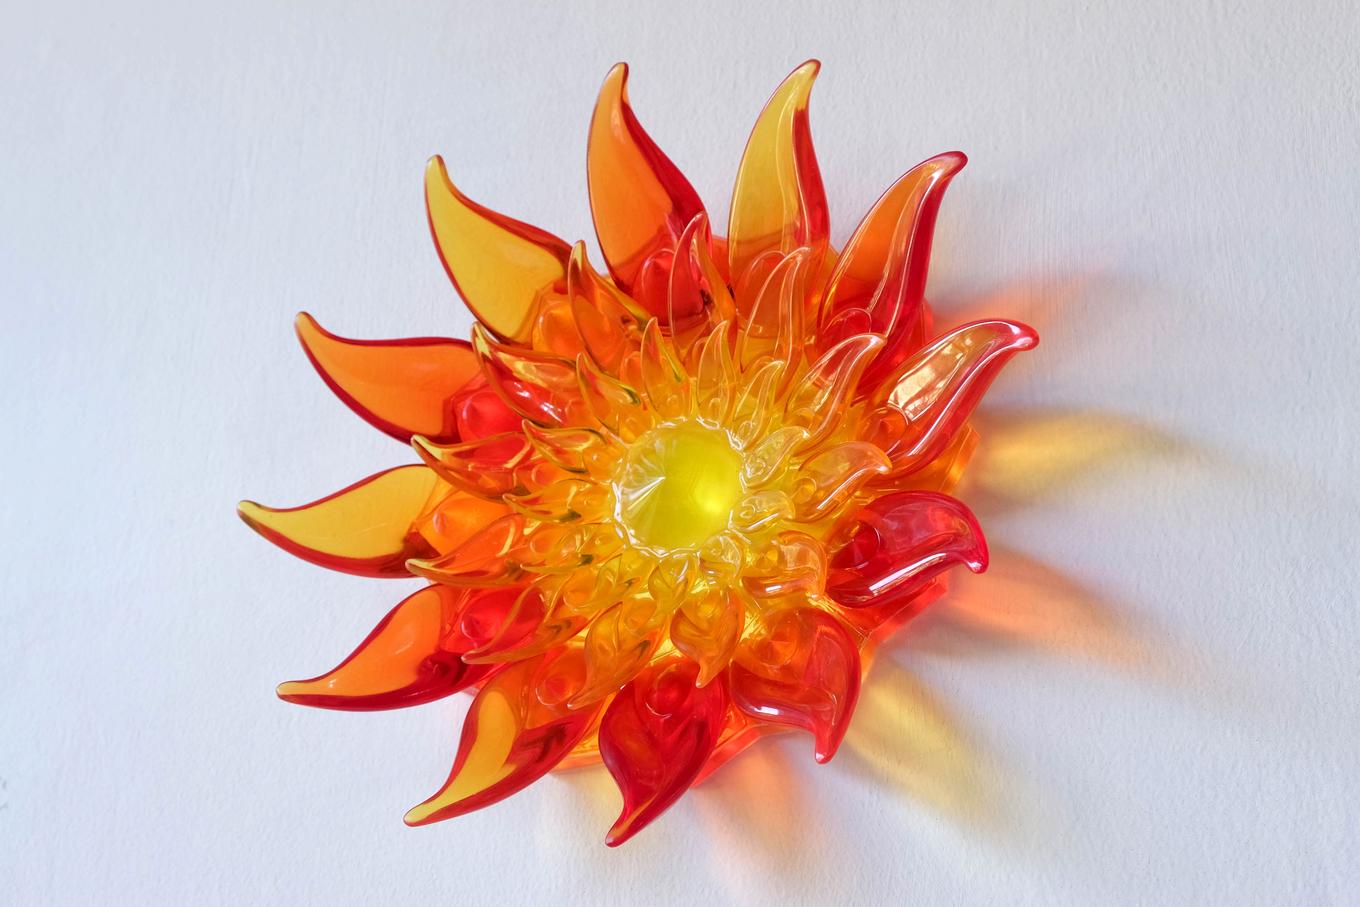 Fire Flower | Herschel Shapiro | Resin Wall Sculpture